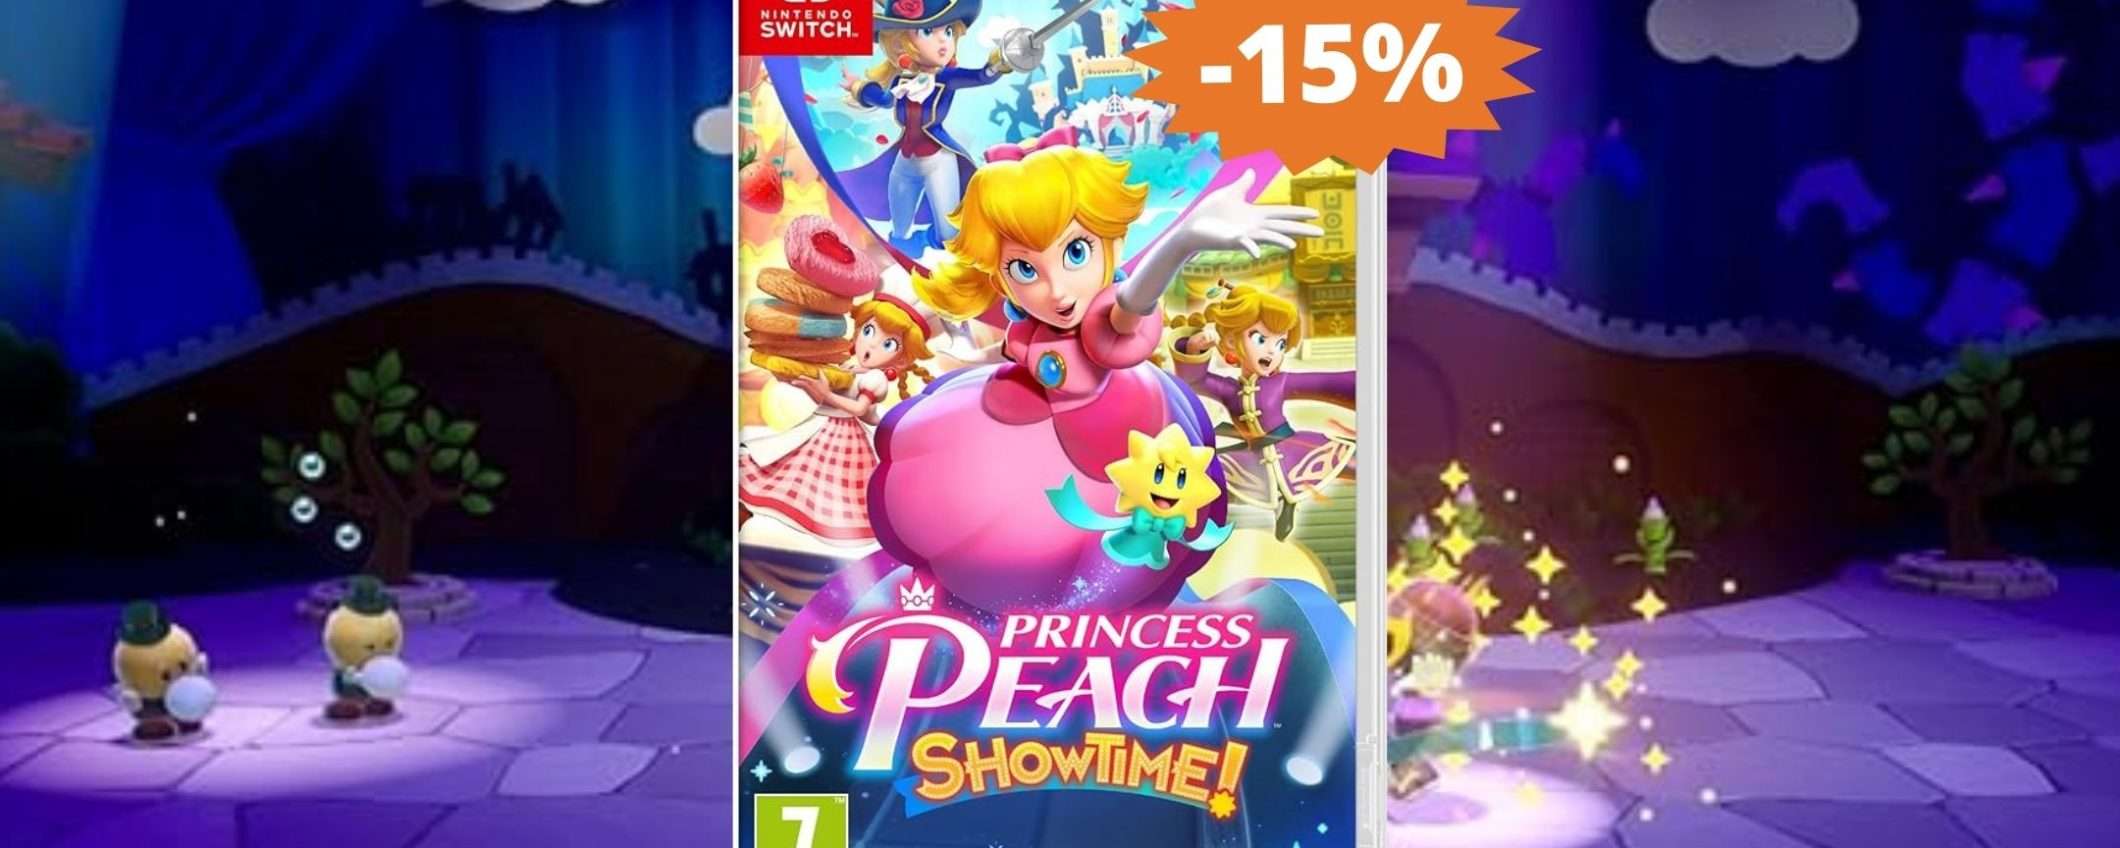 Princess Peach Showtime per Switch: SUPER sconto del 15%